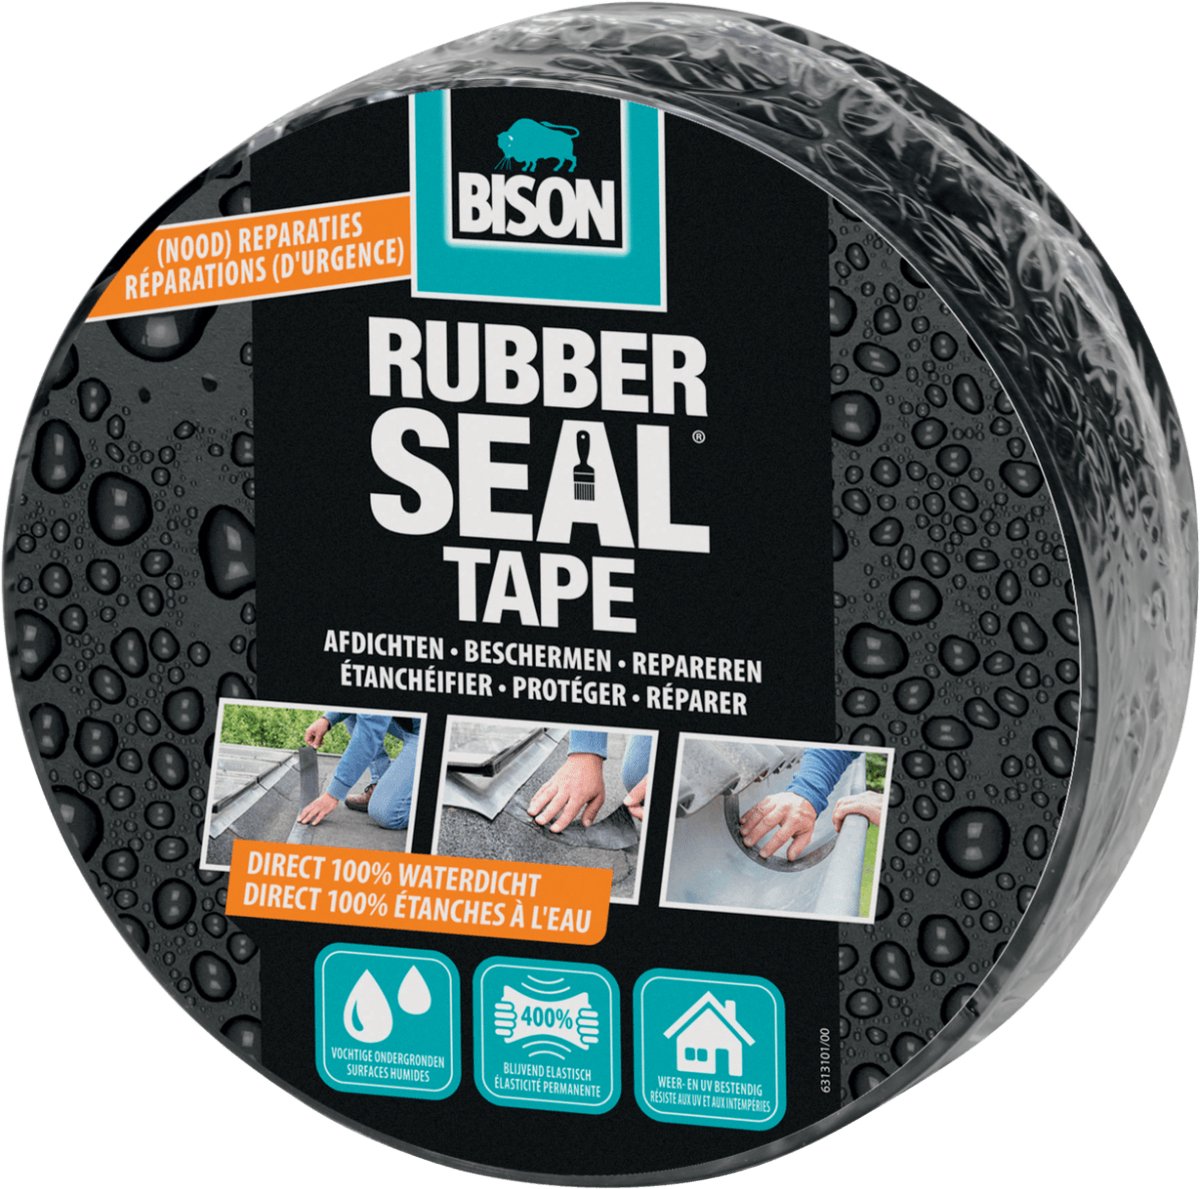 Bison Rubber Seal tape 7.5 cm rol 5 meter - Bison